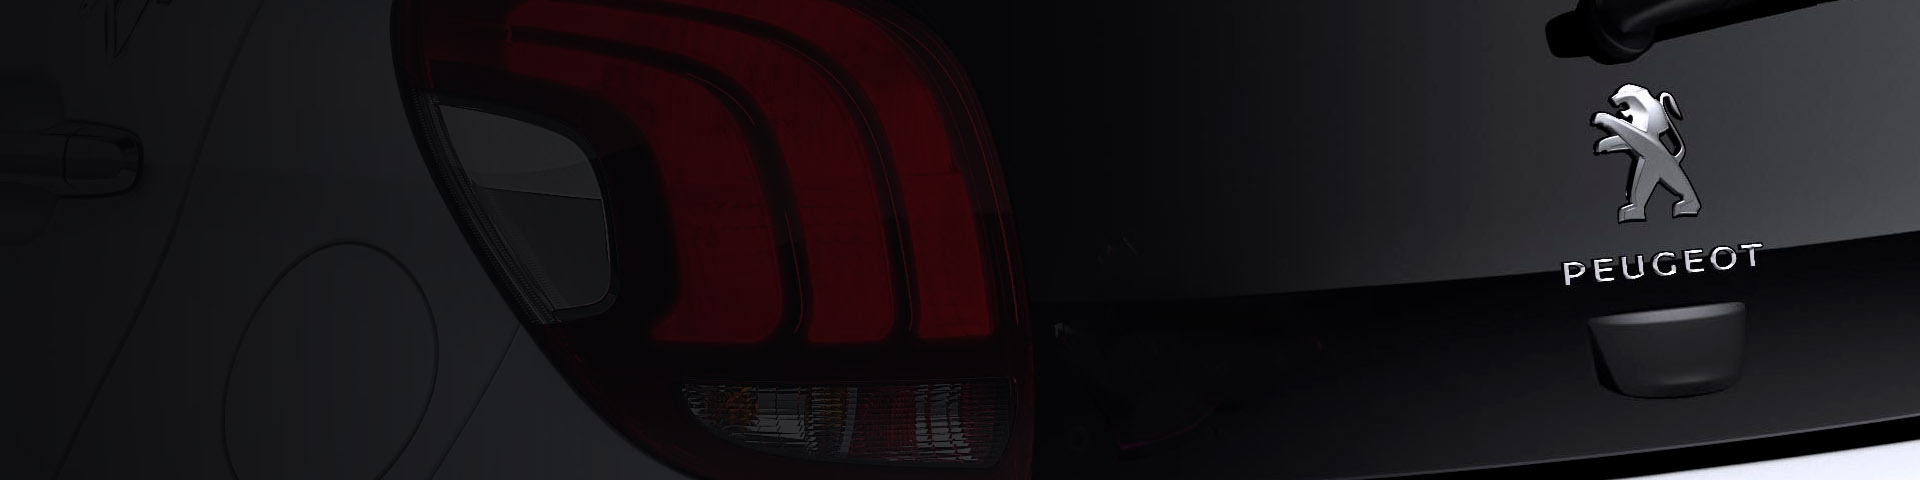 Peugeot 408 Fastback Backdrop